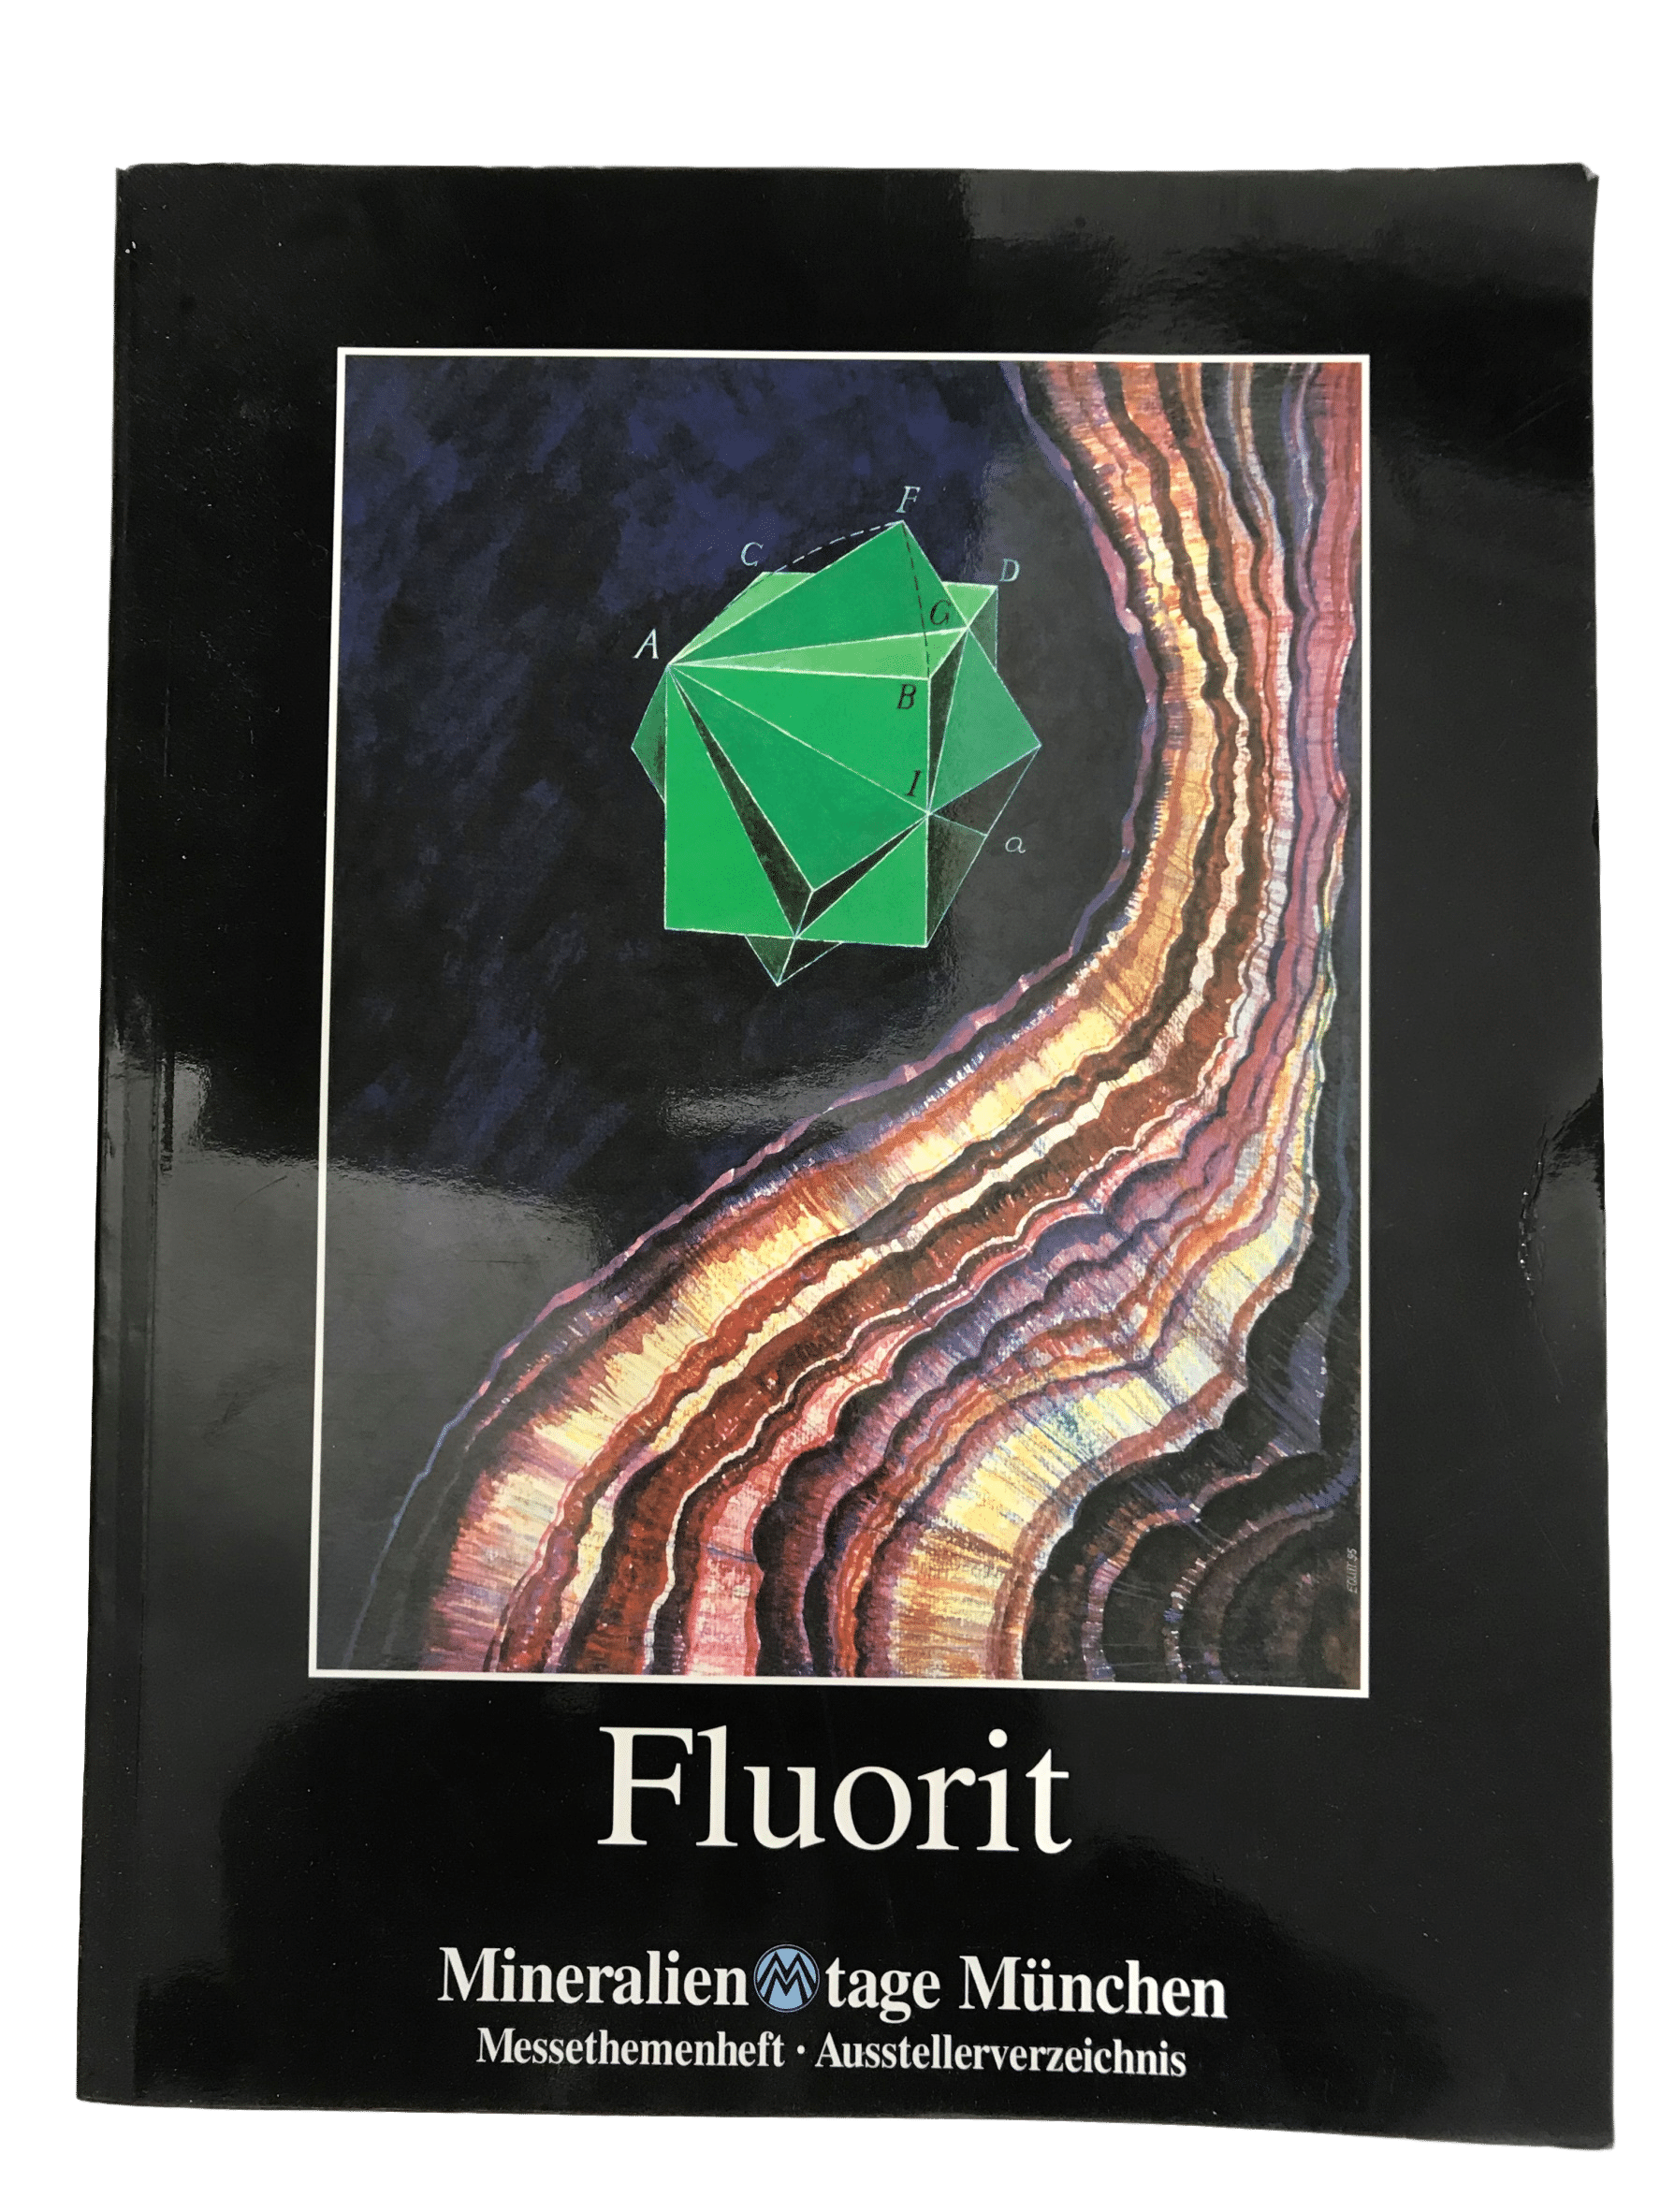 Fluorit Mineralientage Munchen 1995.